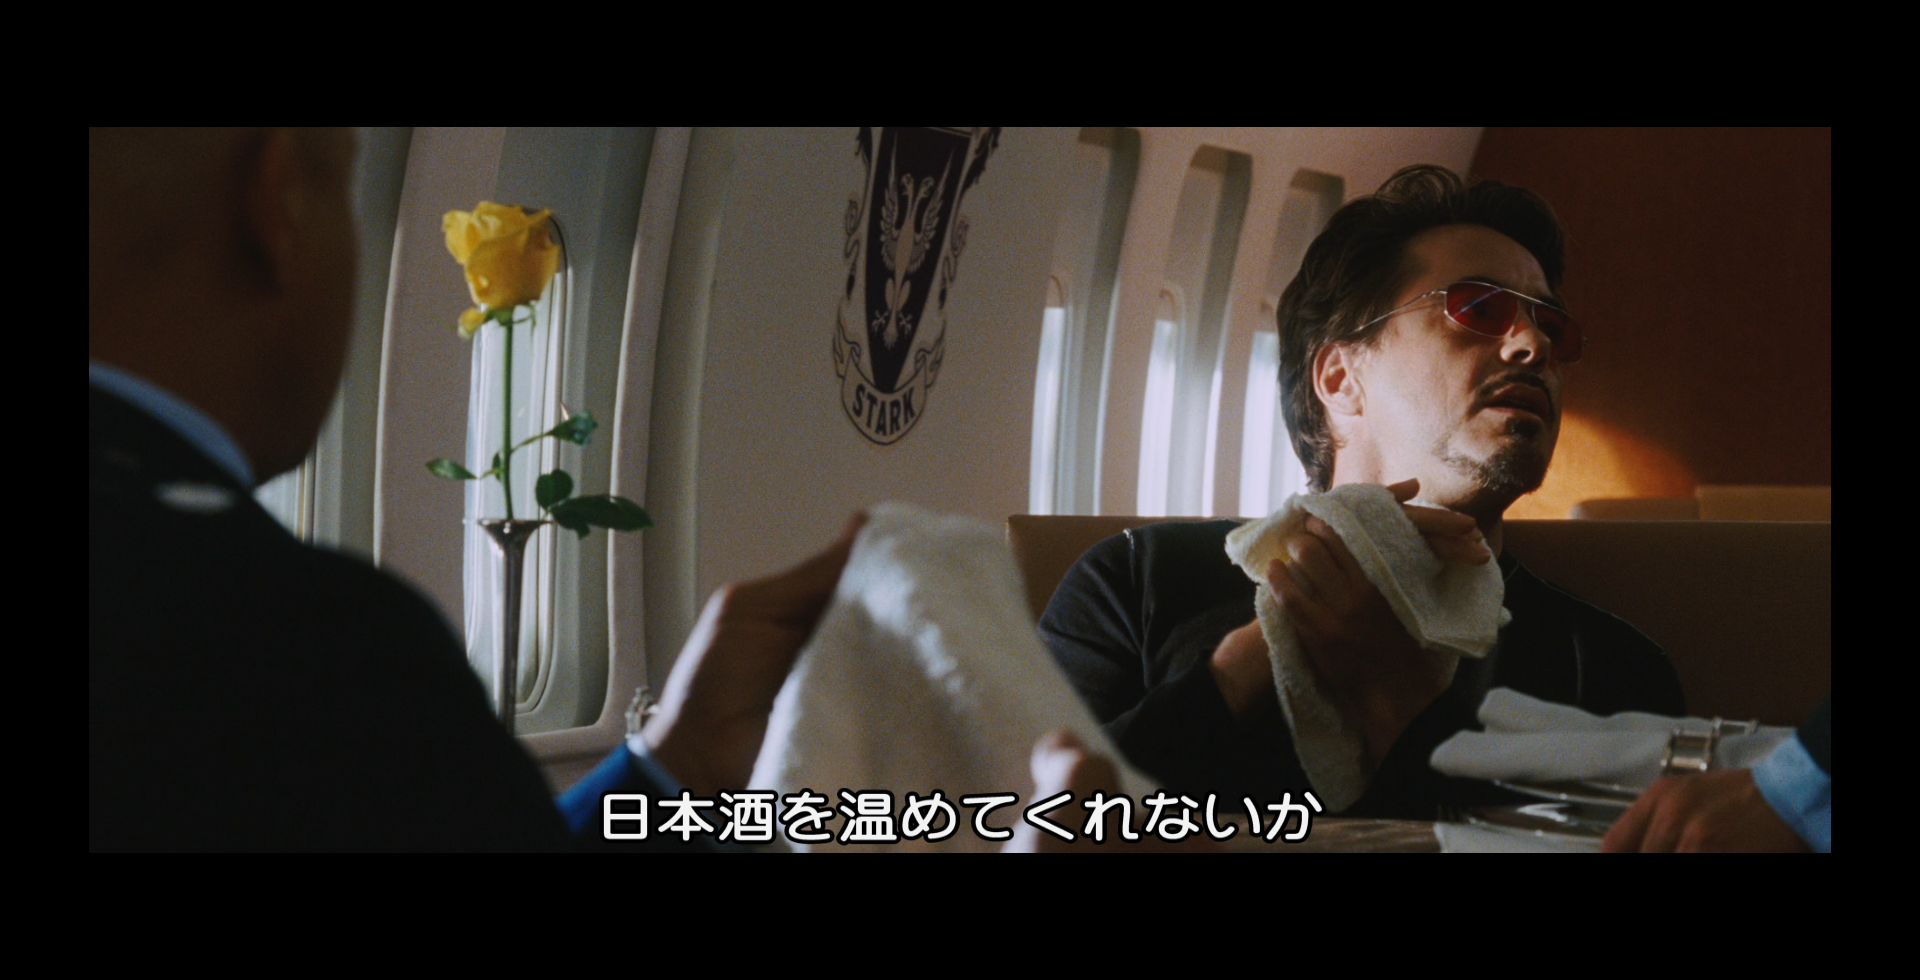 あなたは当てられる 日本酒 の言い方は アベンジャーズのセリフで英語の問題 アメコミ映画の英語解説まとめ